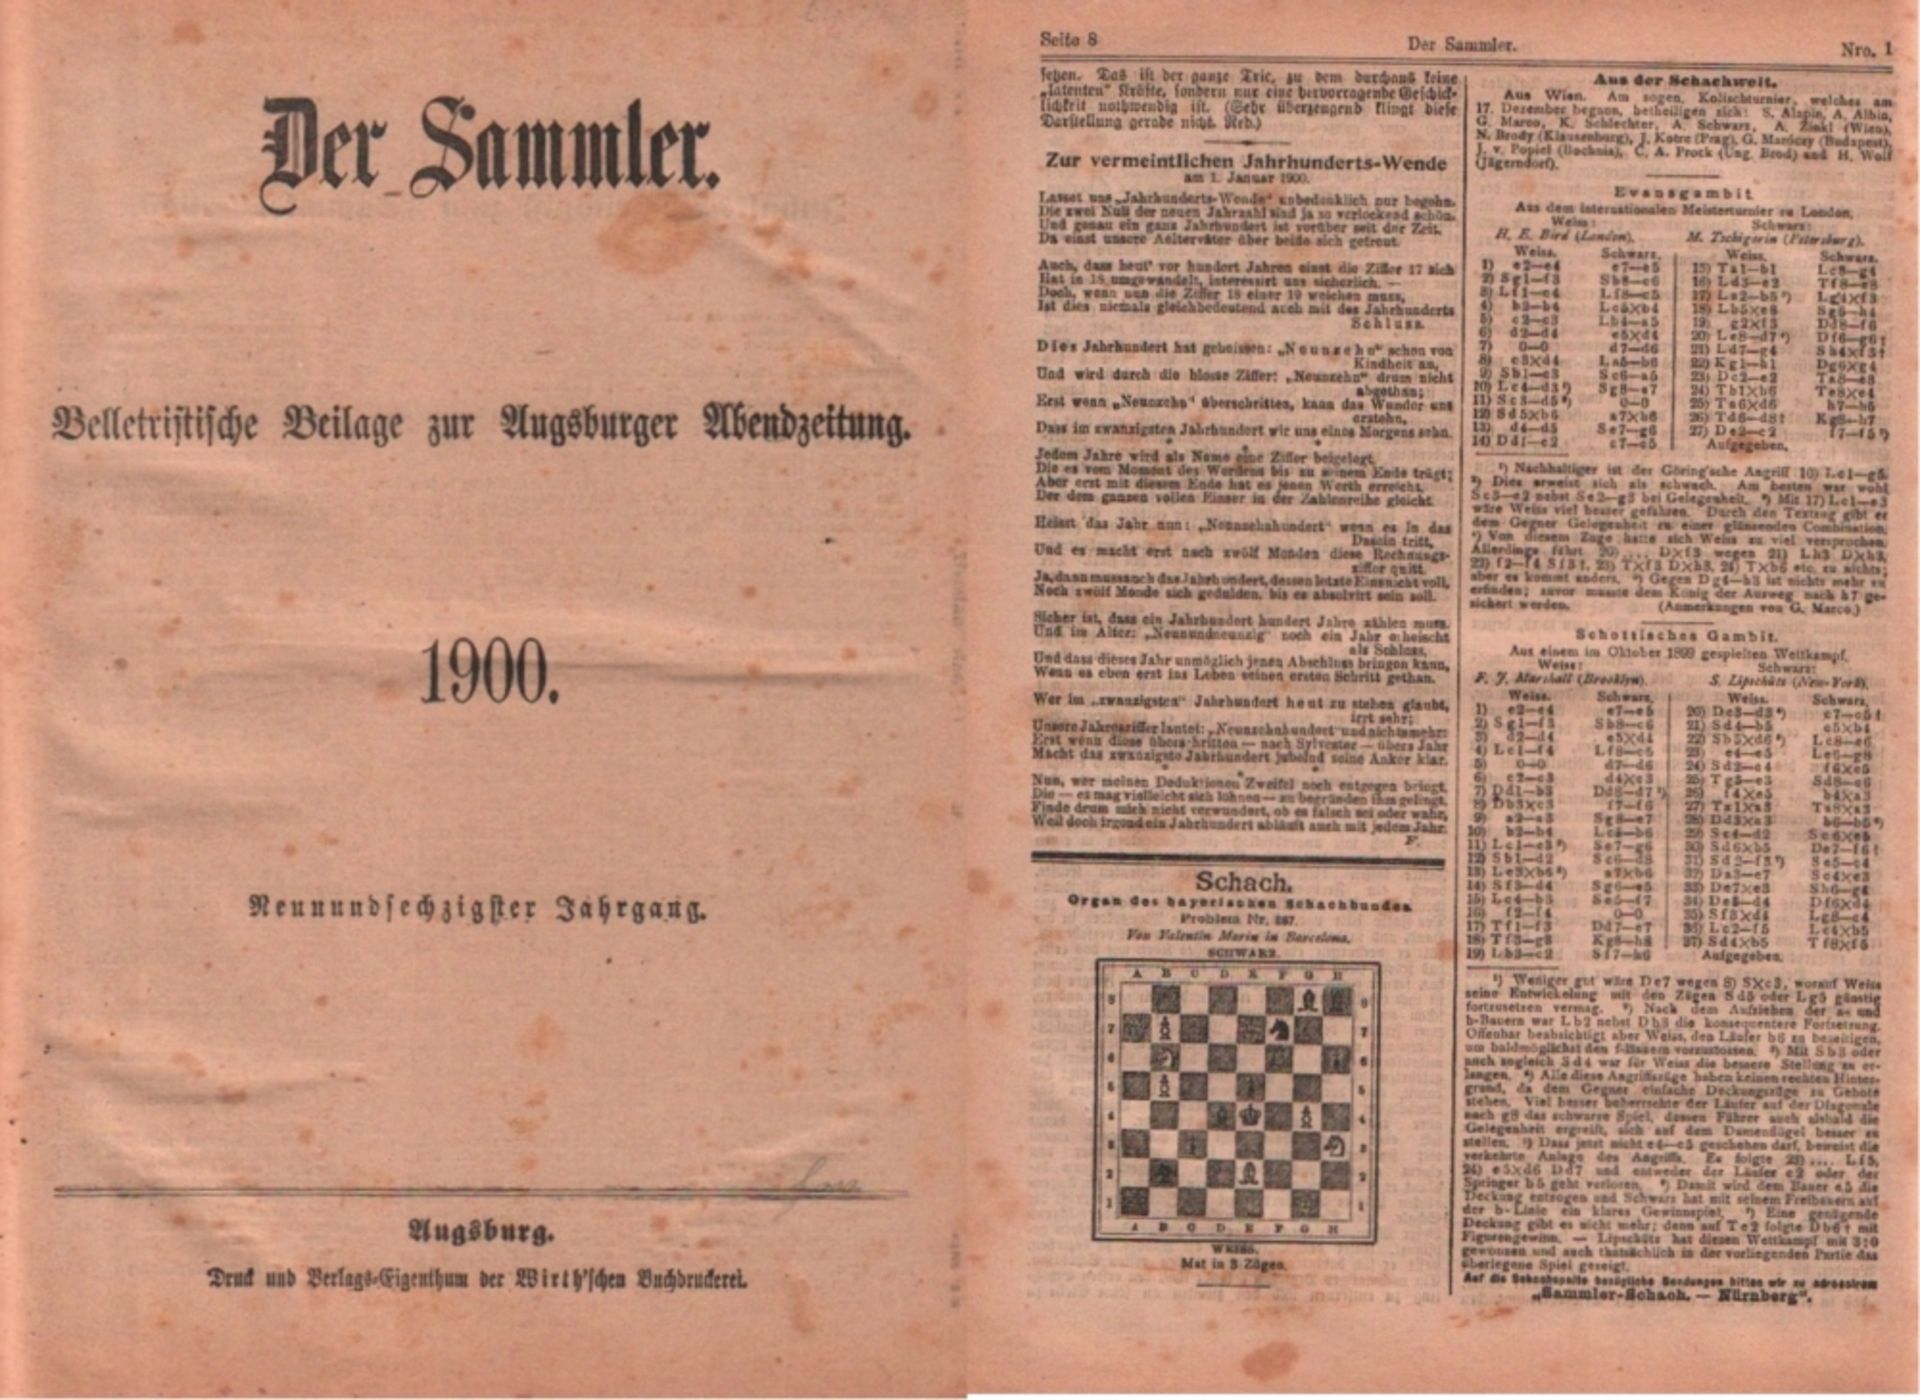 Der Sammler - 1900. Belletristische Beilage zur "Augsburger Abendzeitung". Für die Redaktion